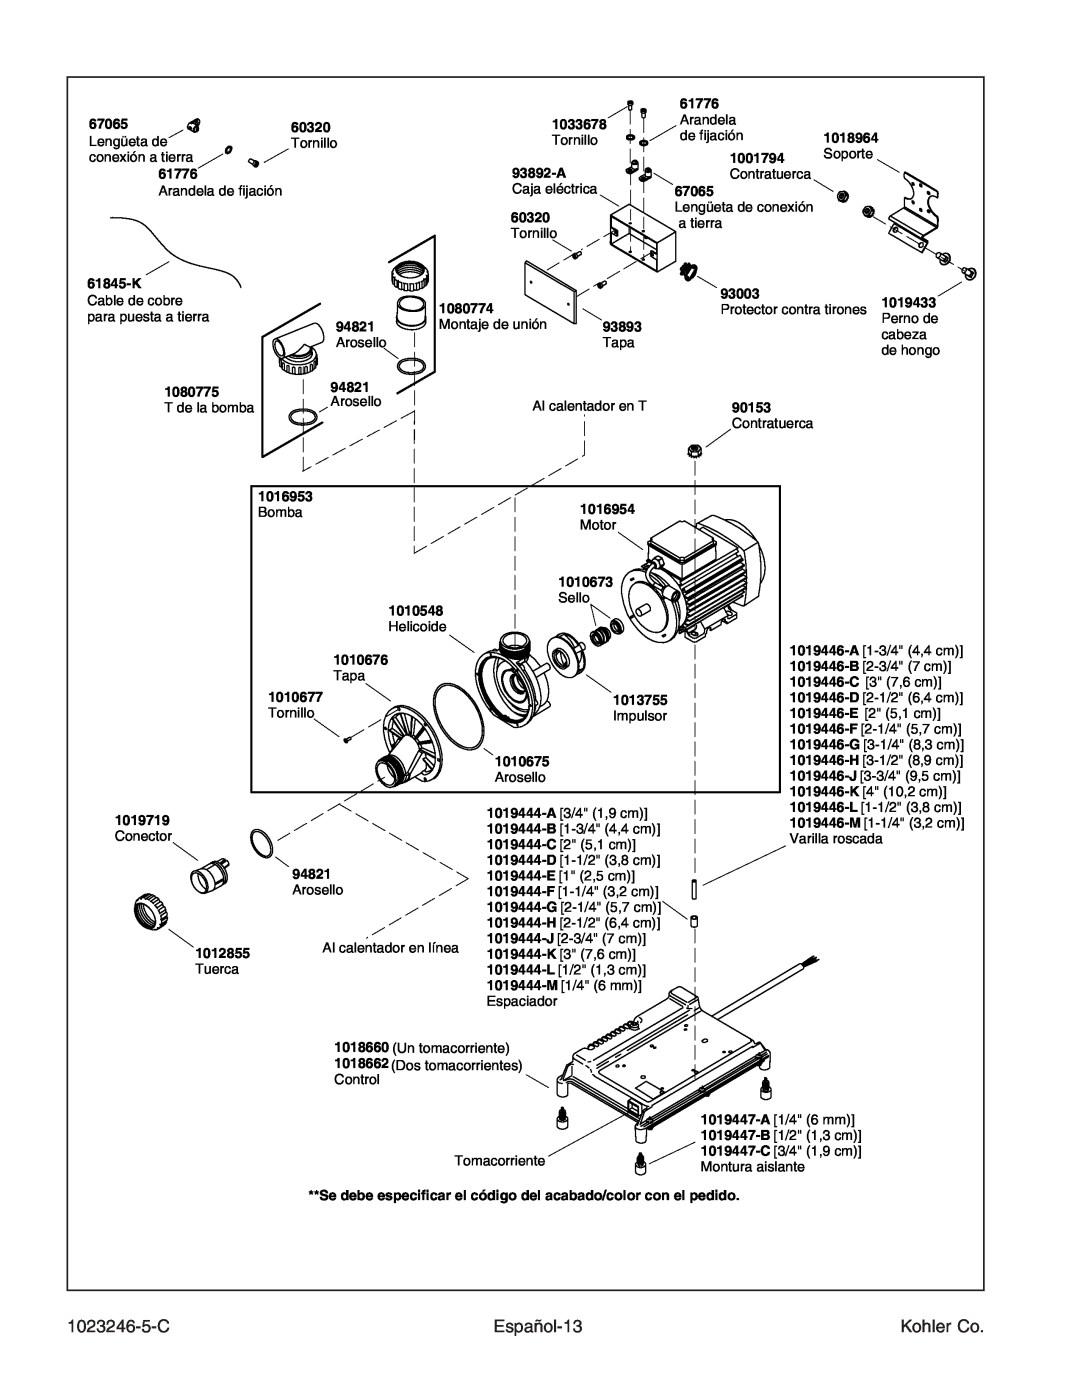 Kohler K-1418-CT manual 1023246-5-C, Español-13, Kohler Co 